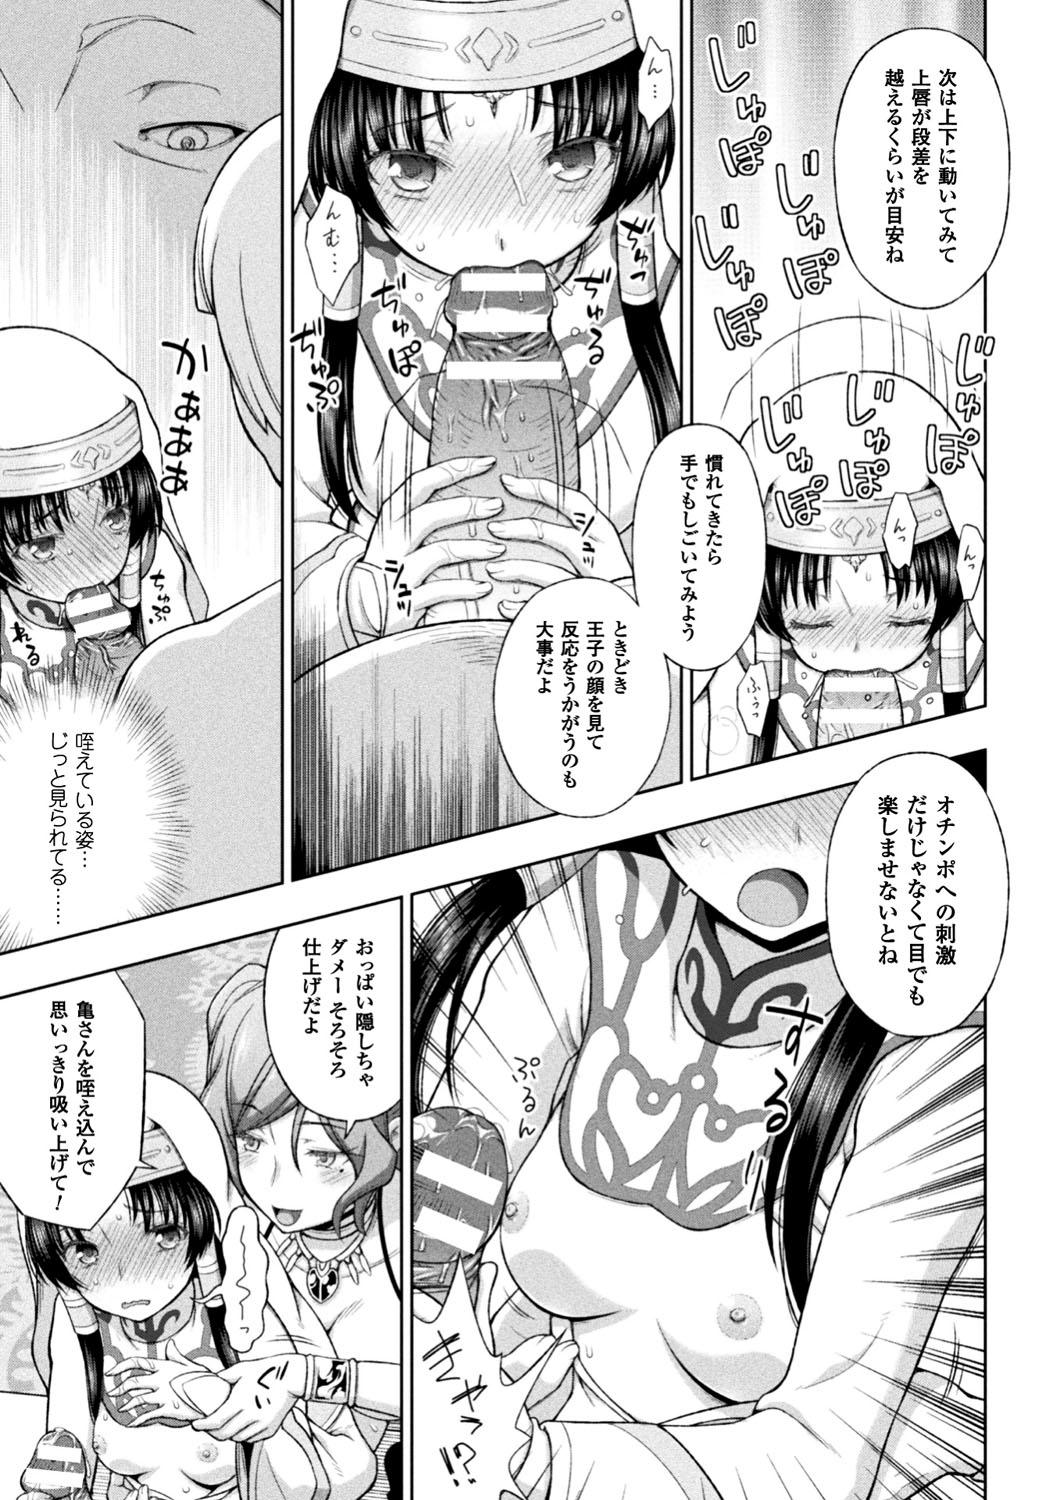 Seigi no Heroine Kangoku File Vol. 12 12